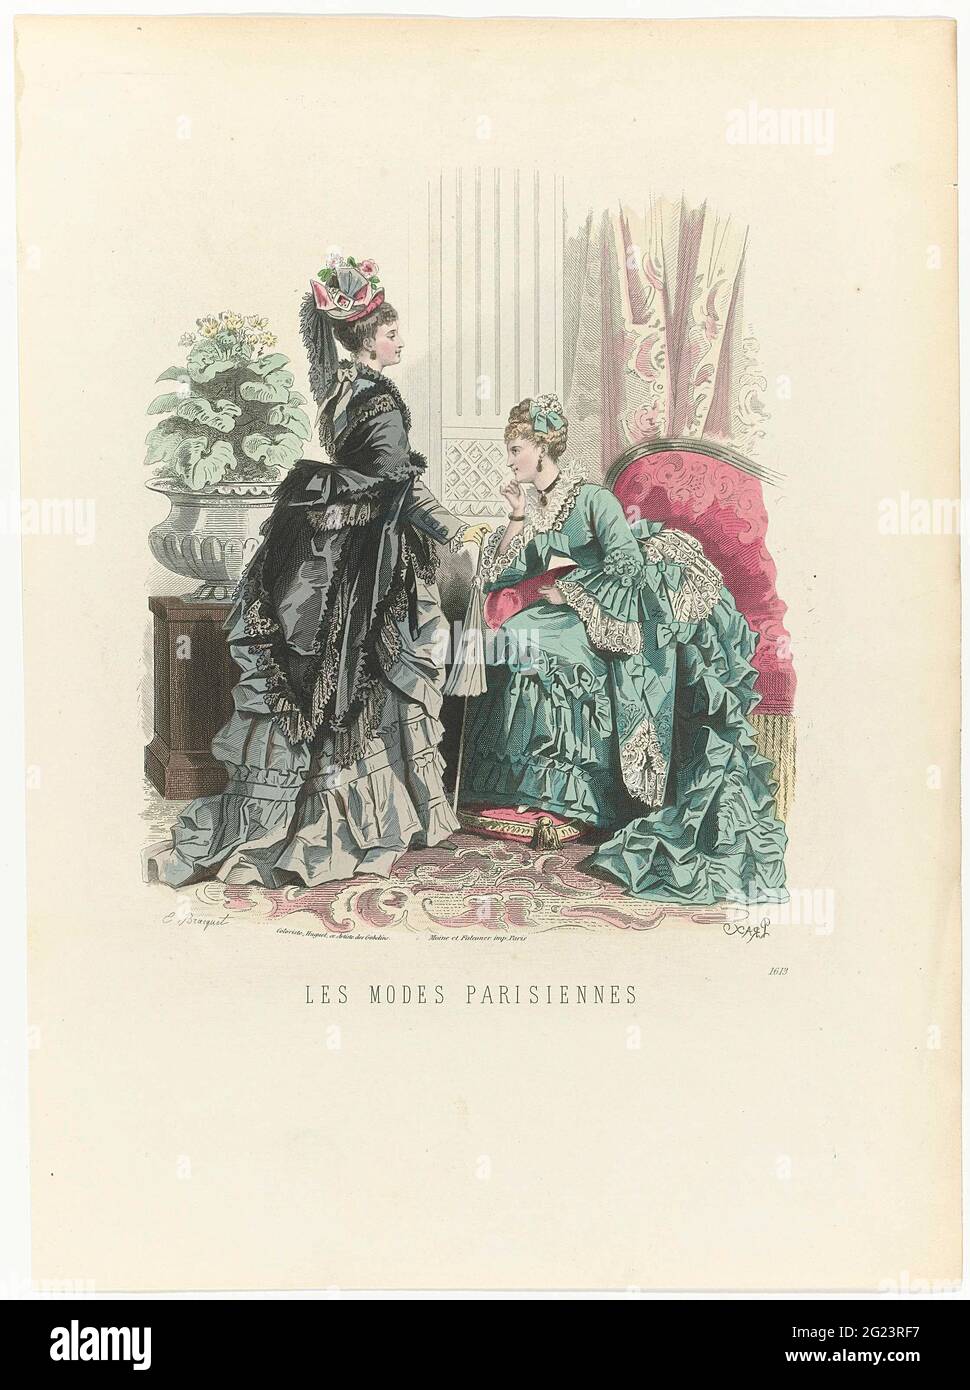 Les Modes Parisiennes, CA. 1871, Nr. 1613. Zwei Frauen im Innenraum, die Frau auf der Rückseite sah einen Mantel auf einem Rock mit Tournure. Die sitzende Frau trägt einen schmutzigen Anzug. Druck aus dem Modemagazin Les Modes Parisiennes (1843-1885). Stockfoto